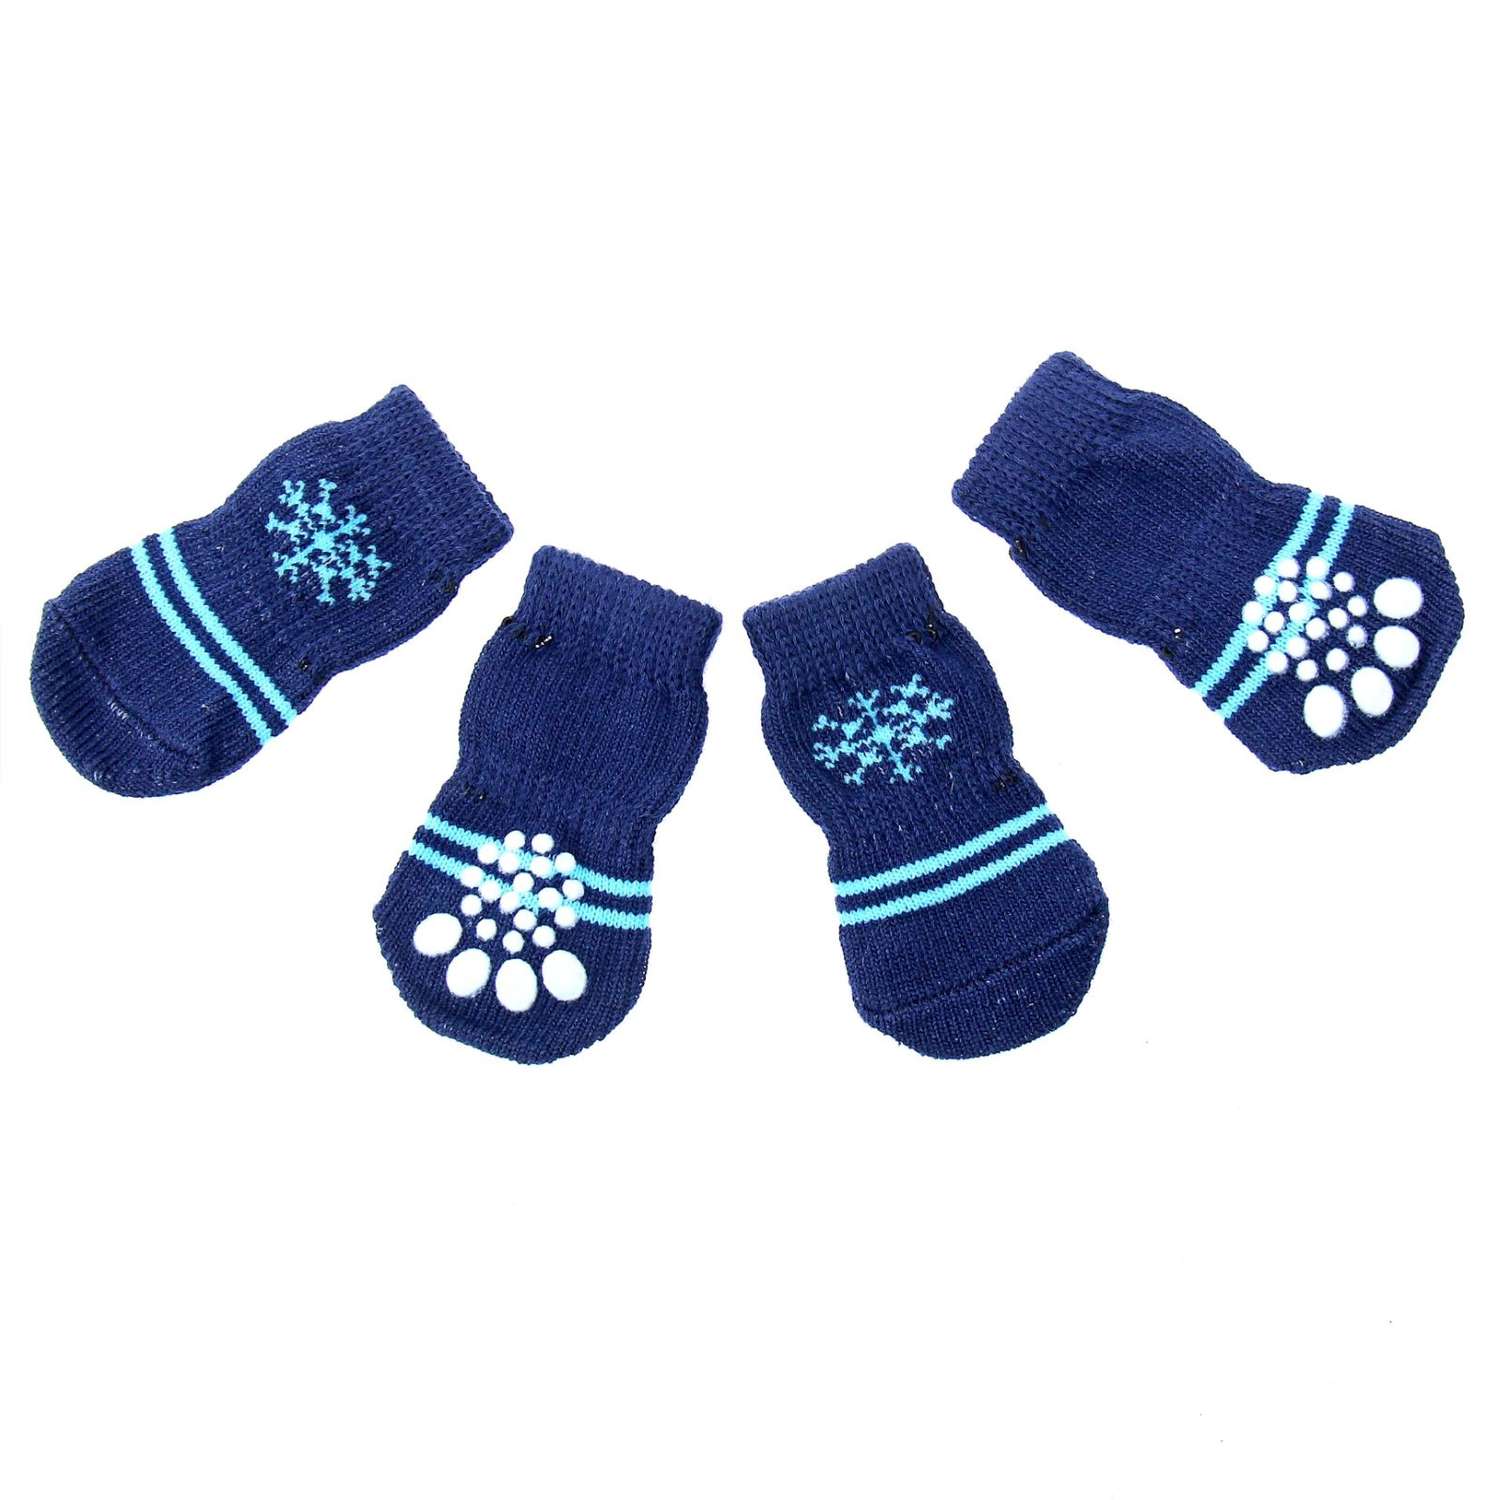 Носки Пижон Снежинка размер М нескользящие 4 шт темно-синий - фото 1